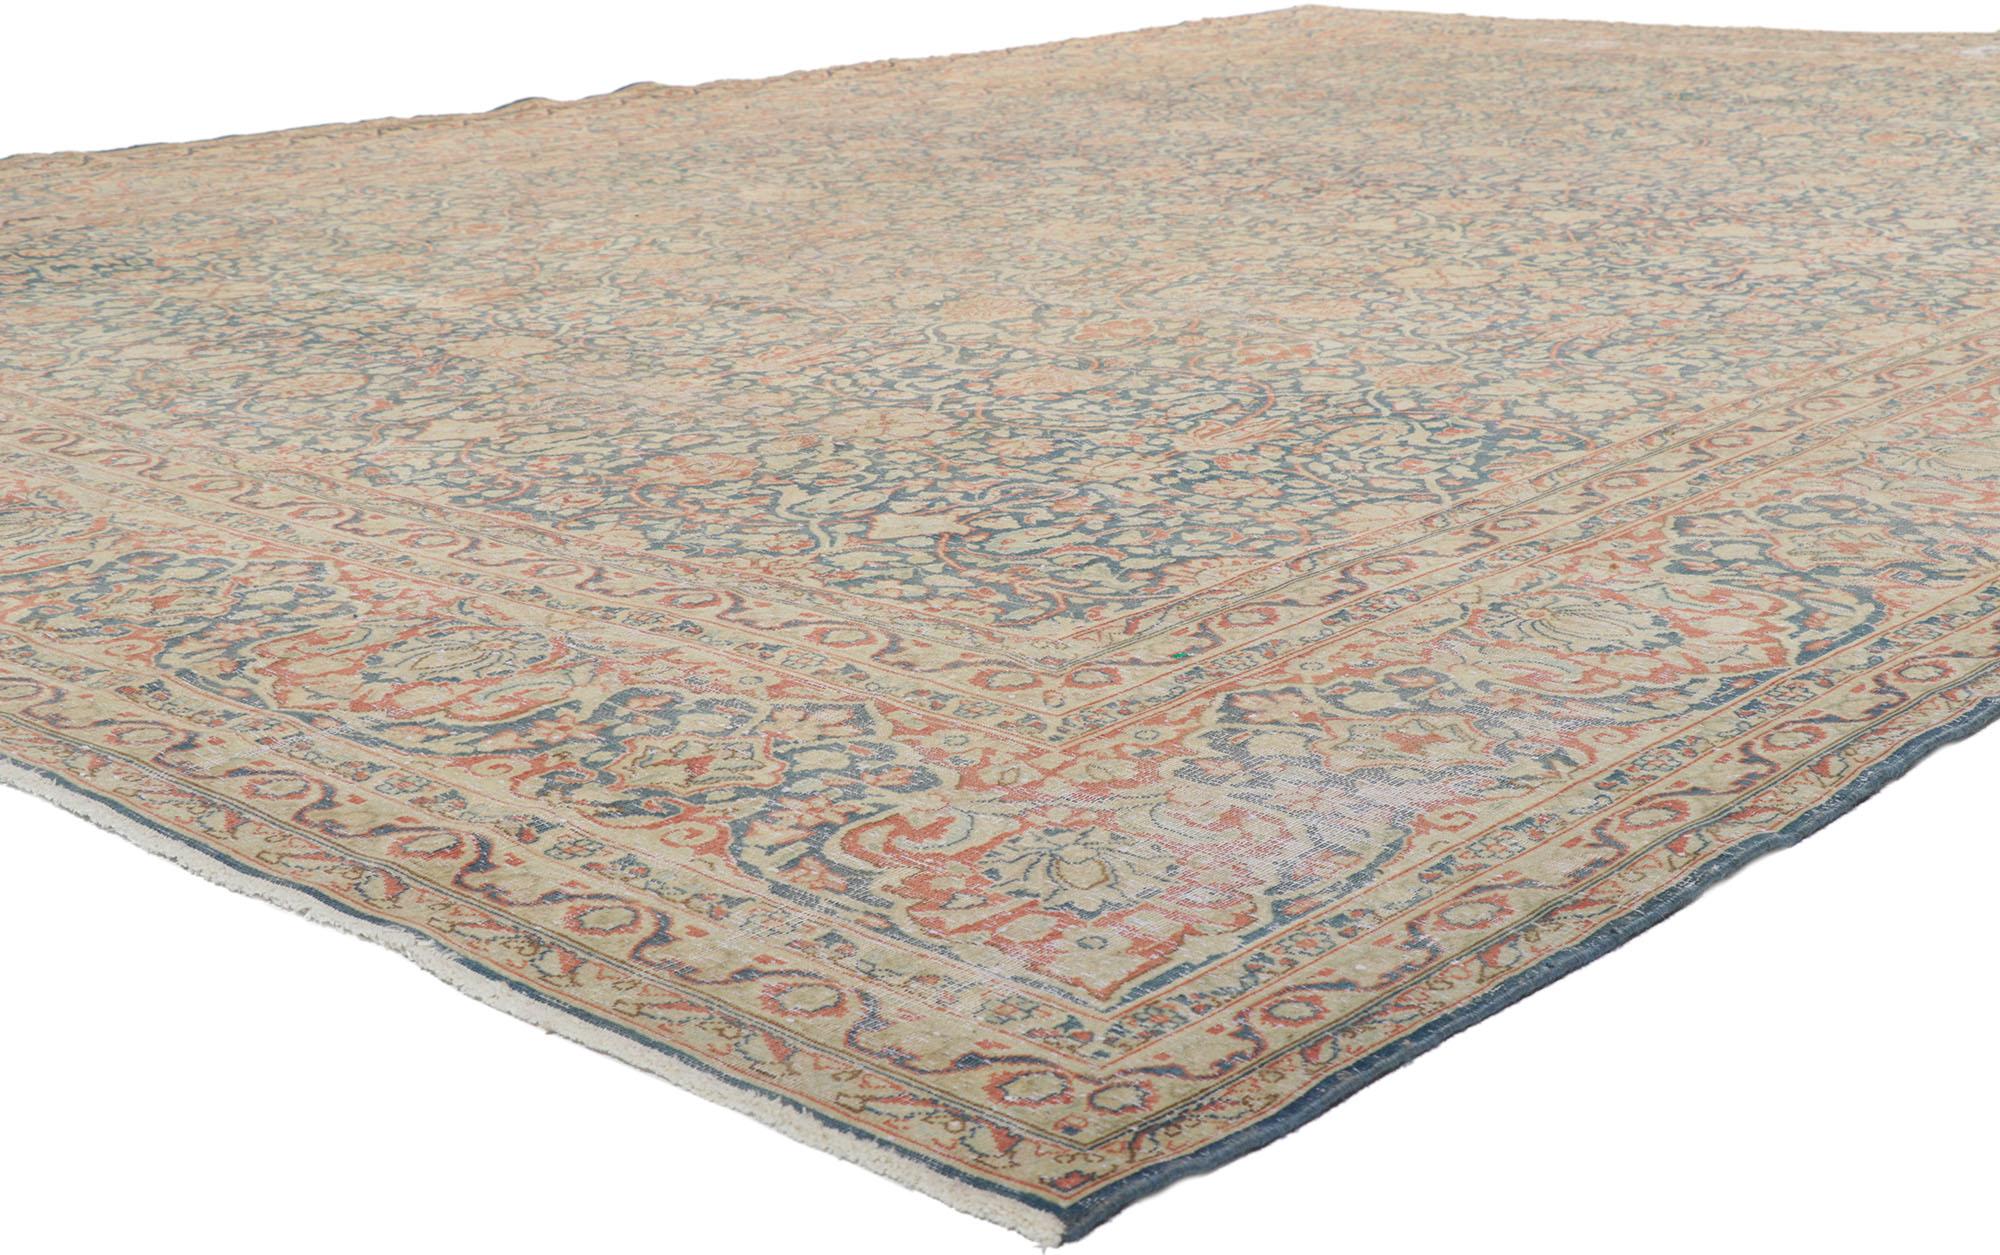 61024 Antiker persischer Kerman-Teppich, 11'03 x 16'04.
Gebeutelt. Wünschenswerte Altersabnutzung. Antike Wäsche. Abrash. Handgeknüpfte Wolle. Hergestellt in Iran.
 